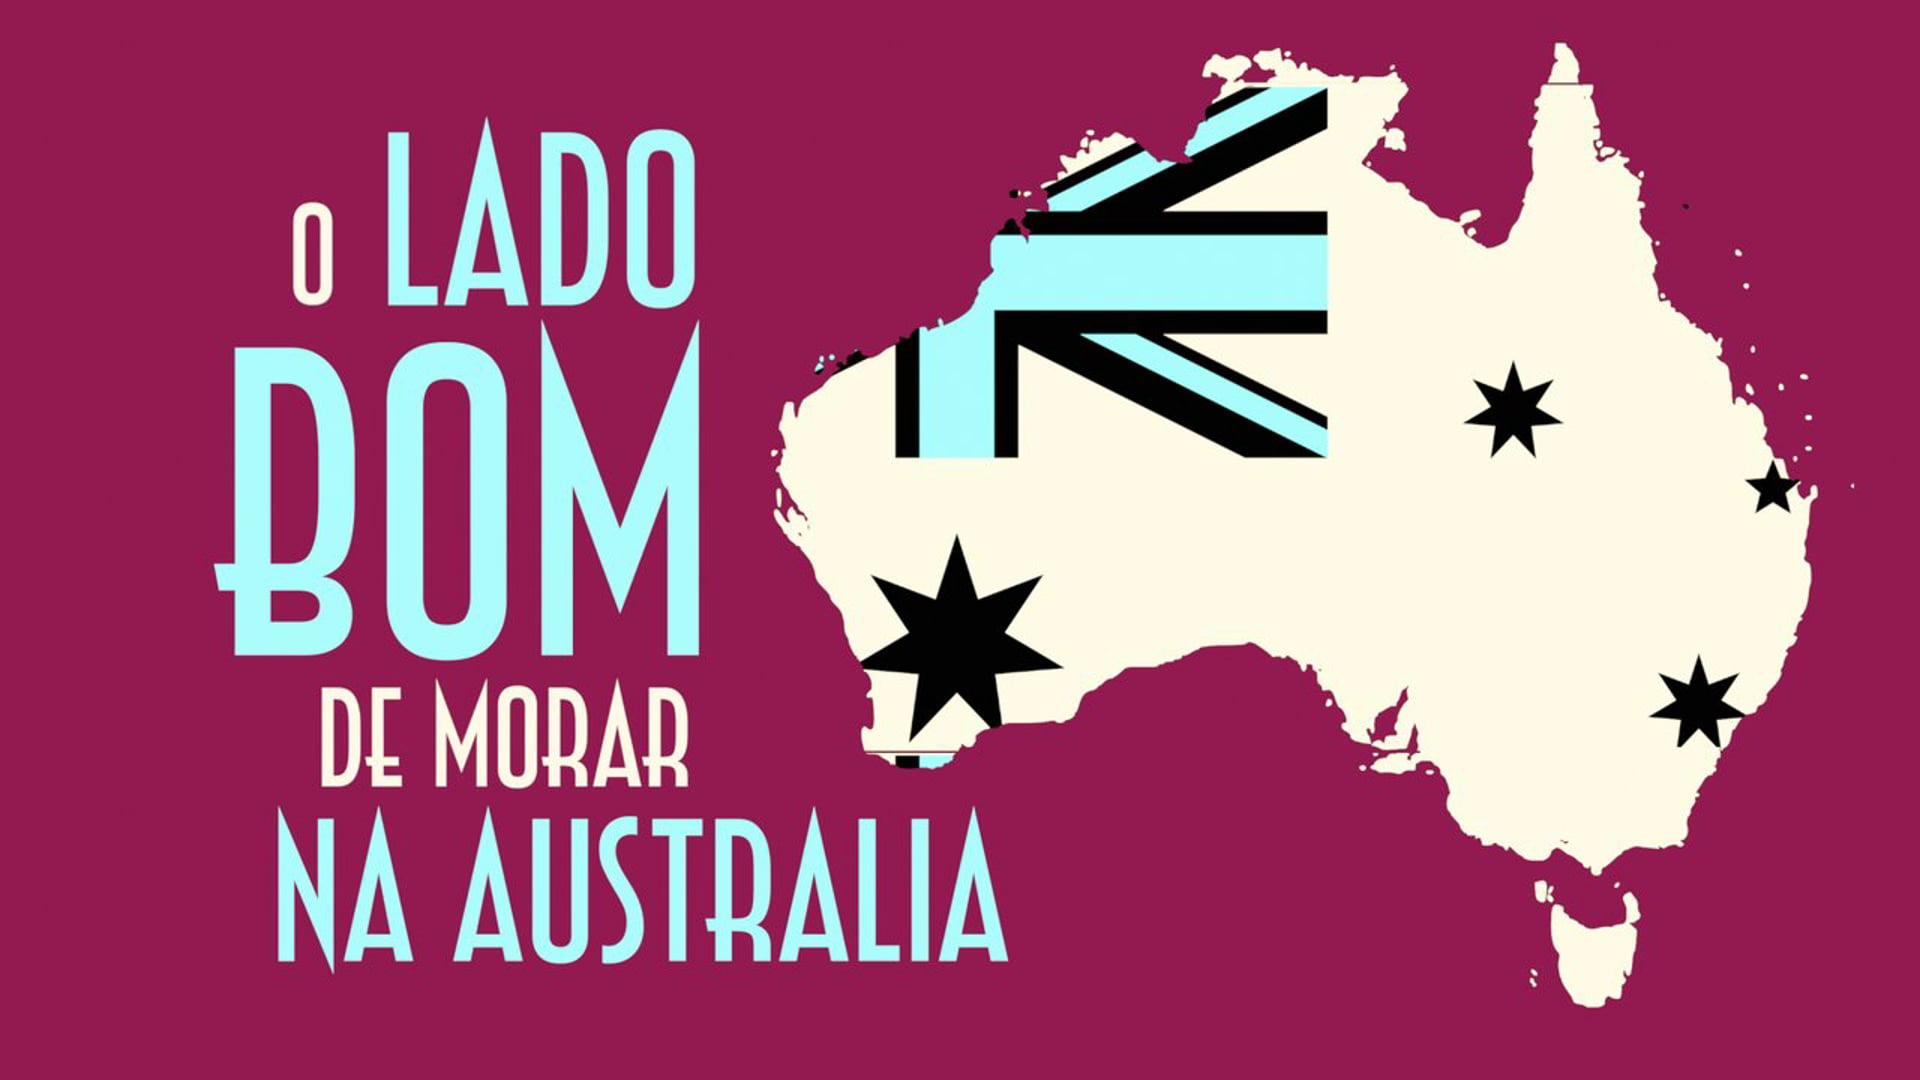 O Lado Bom de Morar na Australia - EMVB - Emerson Martins Video Blog 2013